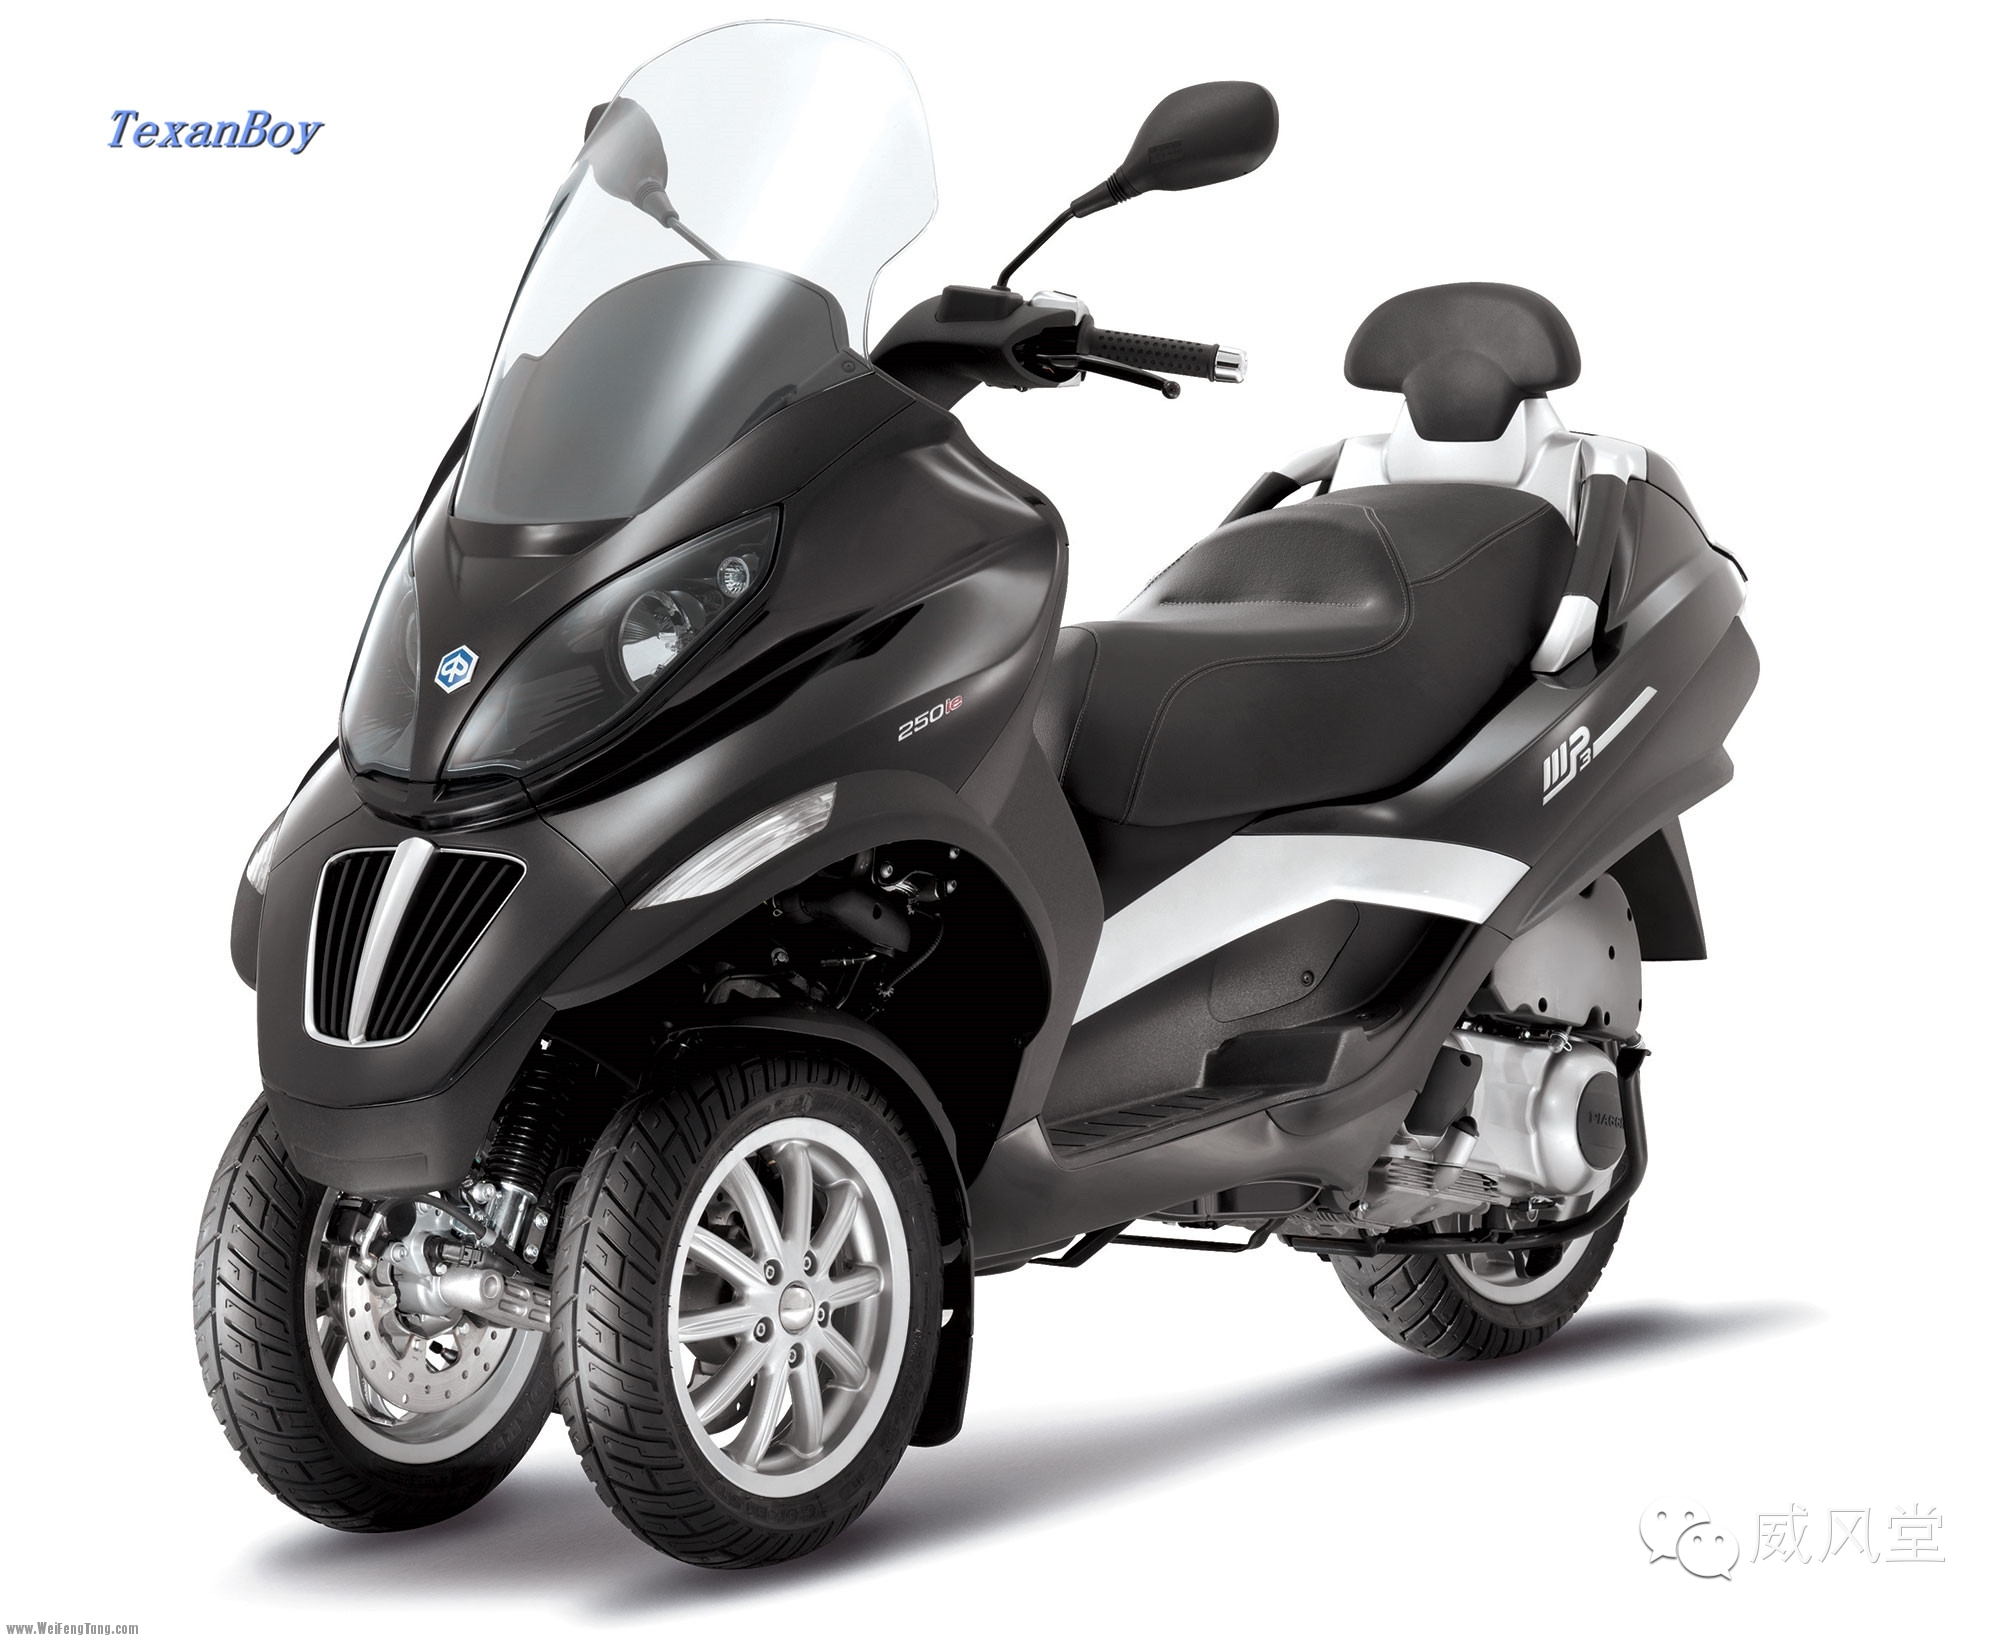 摩闻 - 毕亚乔摩托车拟起诉 Peugeot 和 Yamaha 涉专利侵权